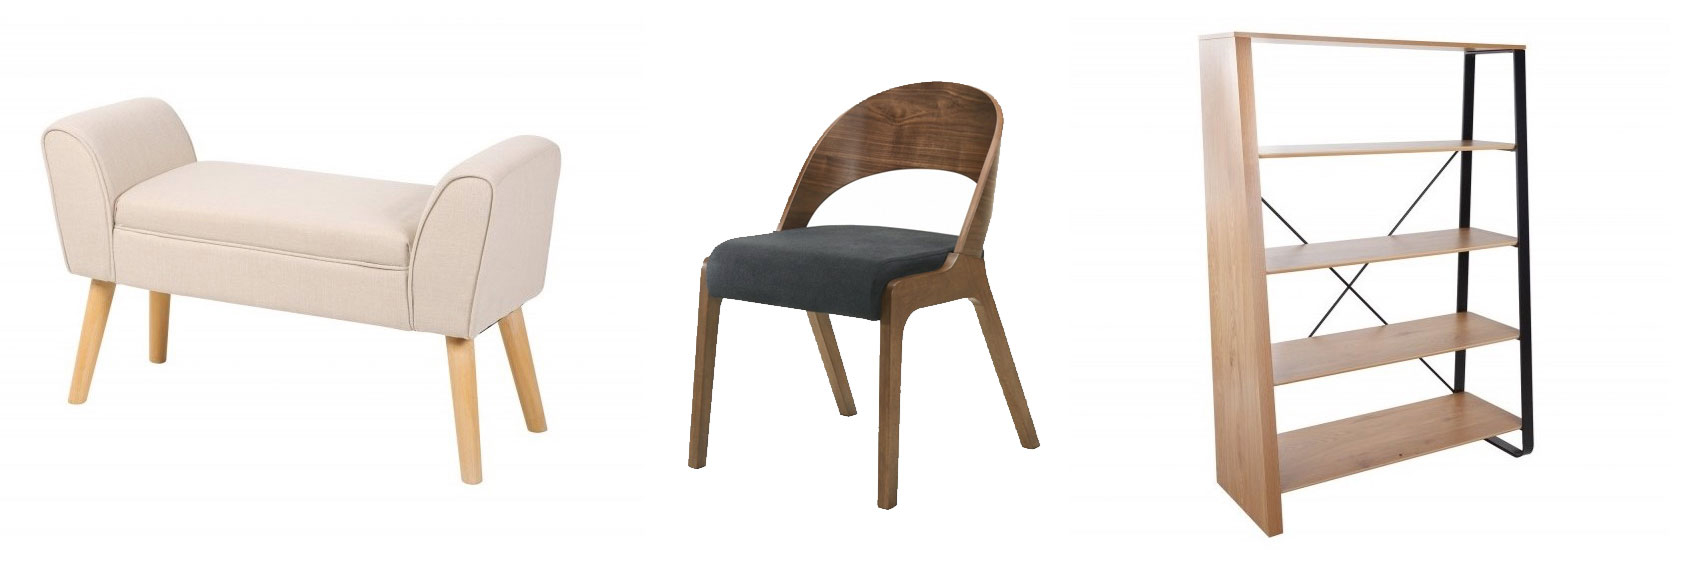 Skandinávská čalouněná lavice Karen béžové barvy, Stylová skandinávská židle Nordica Nogal z ořechového dřeva, Skandinávský regál Linden ze dřeva s černým kovovým rámem